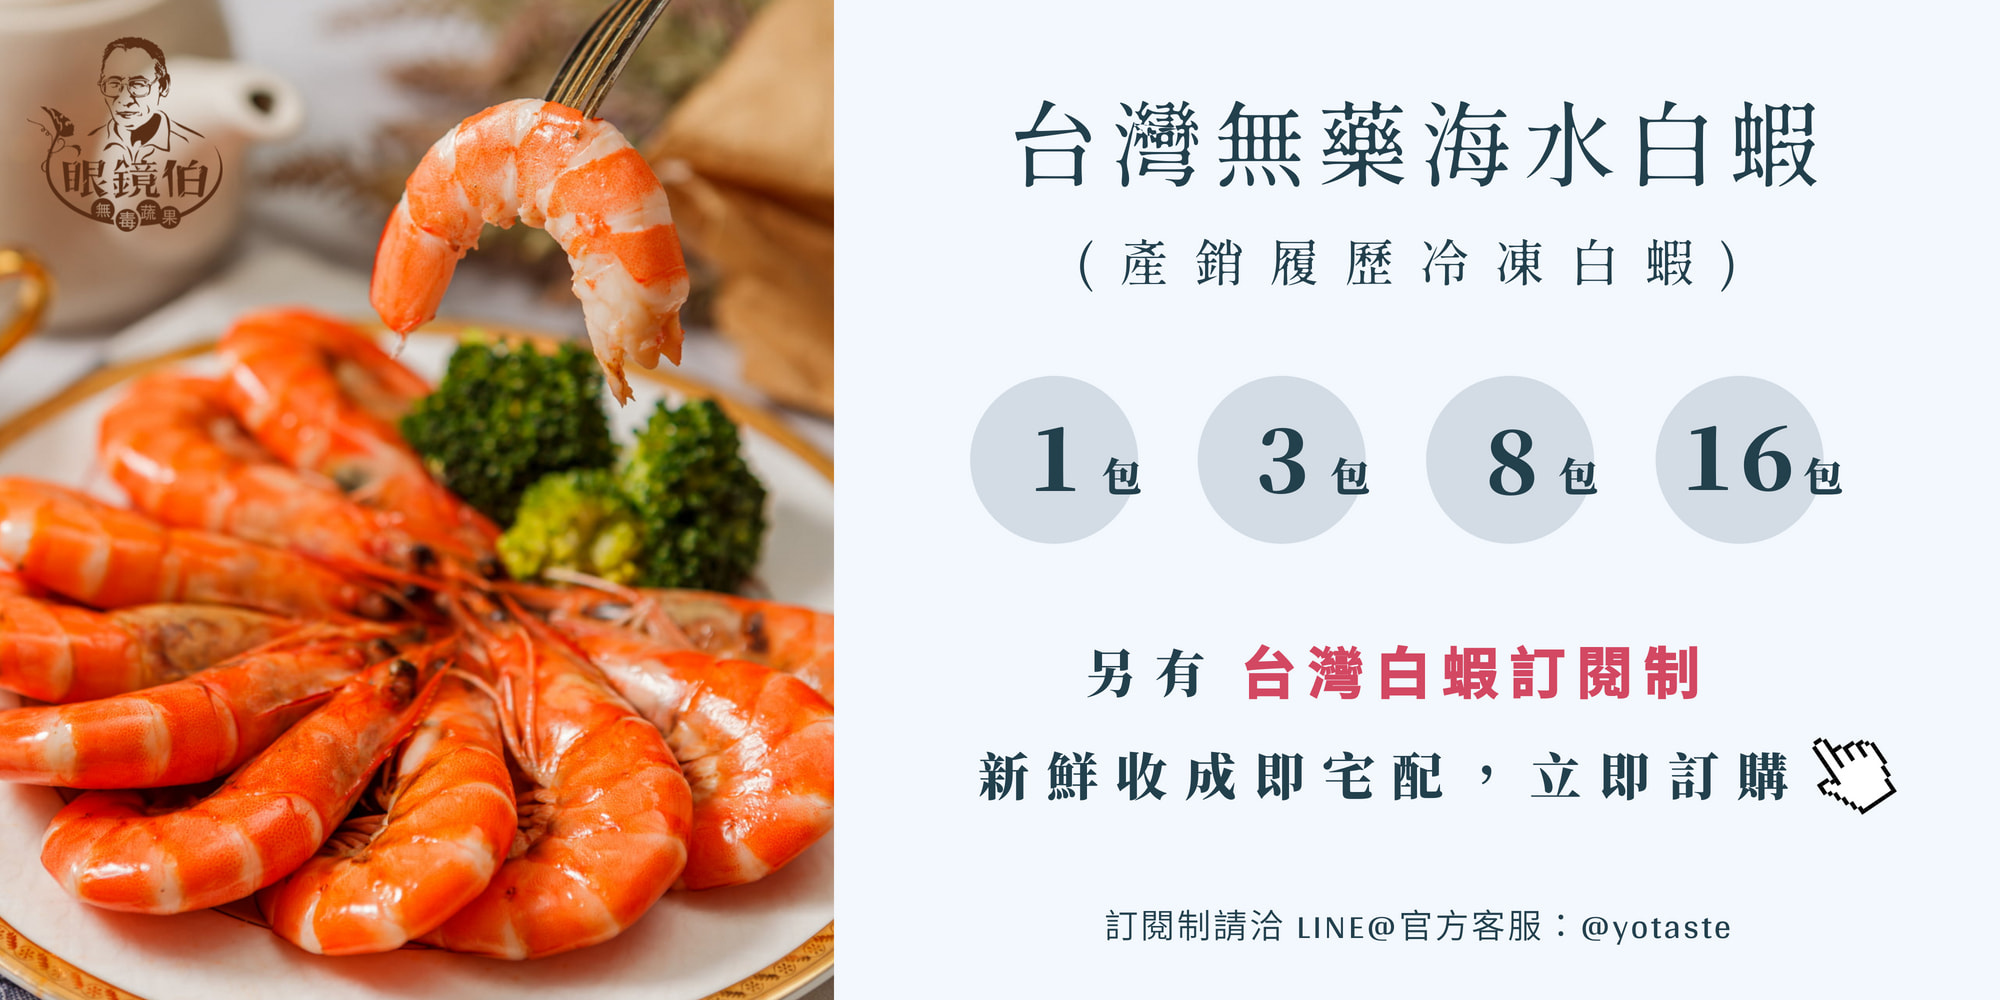 眼鏡伯白蝦訂購規格，台灣白蝦預購訂閱制